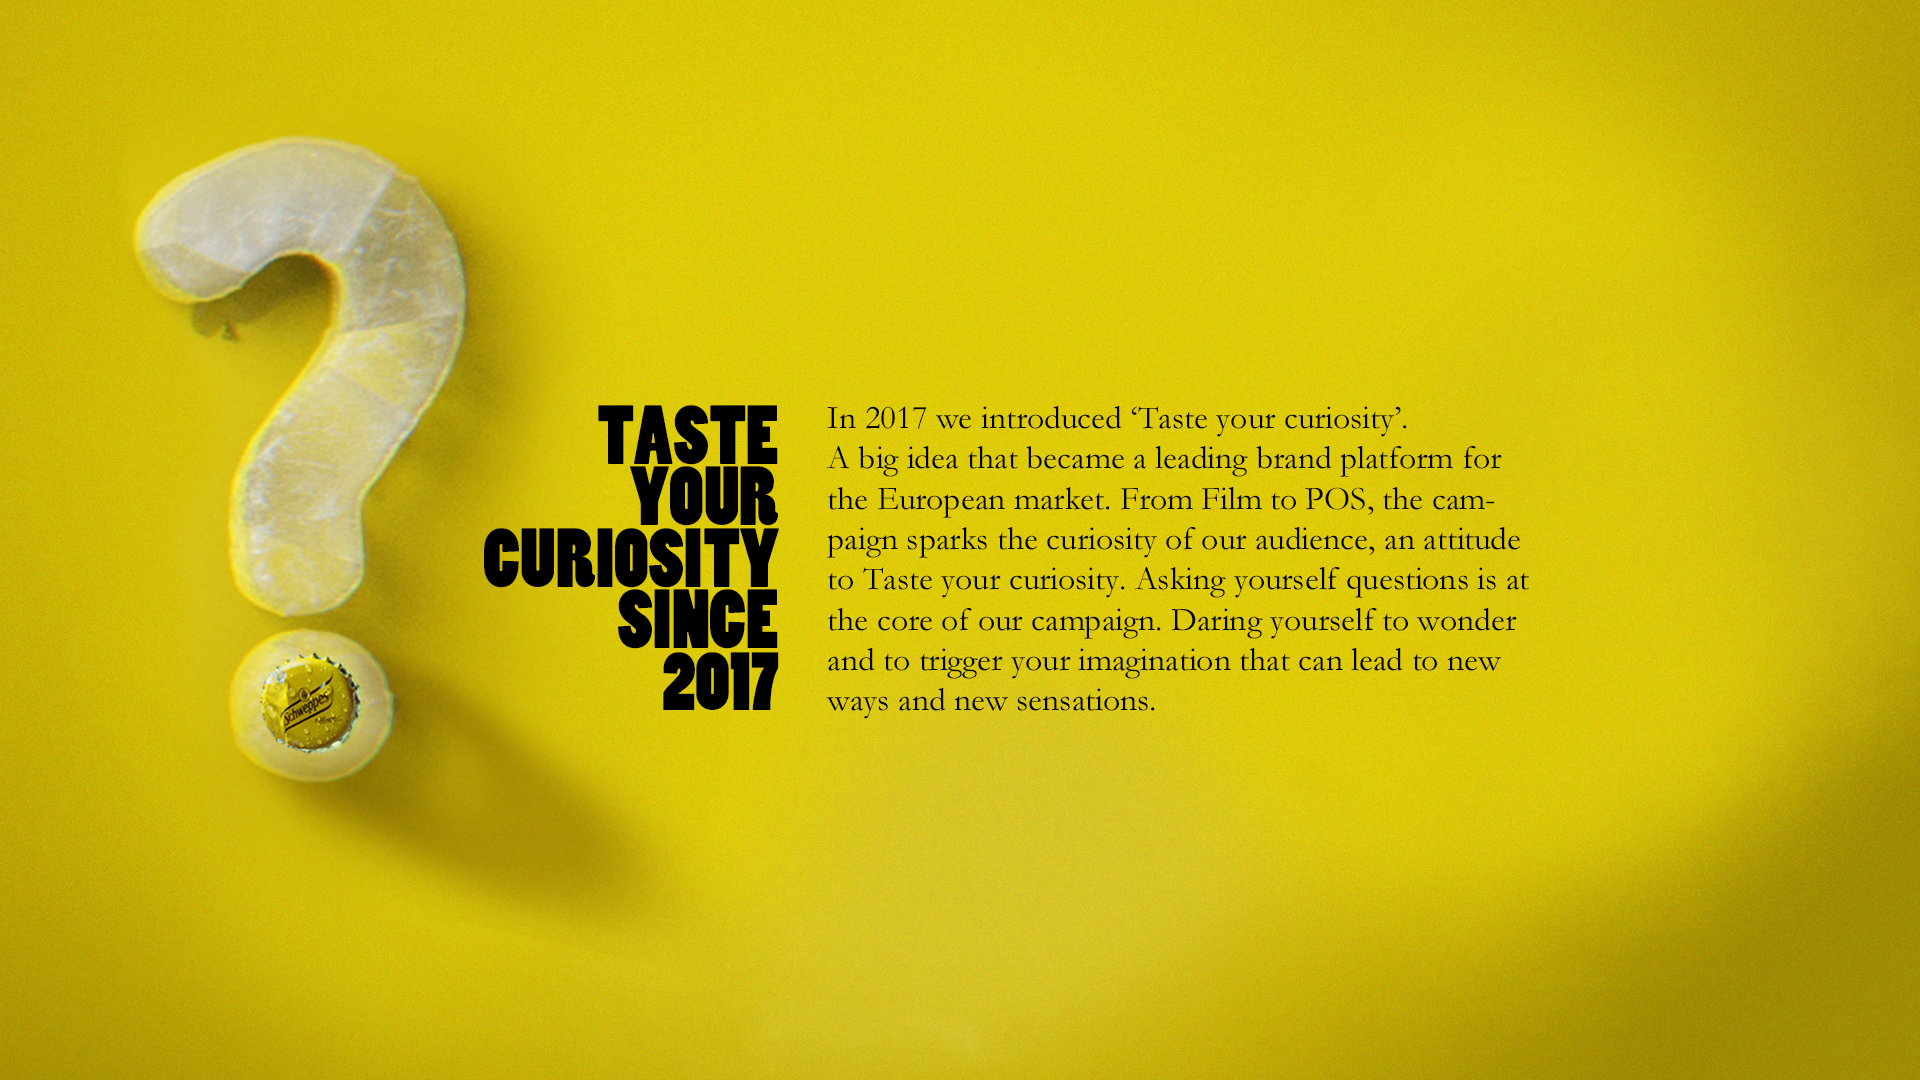 Taste your Curiosity Since 2017